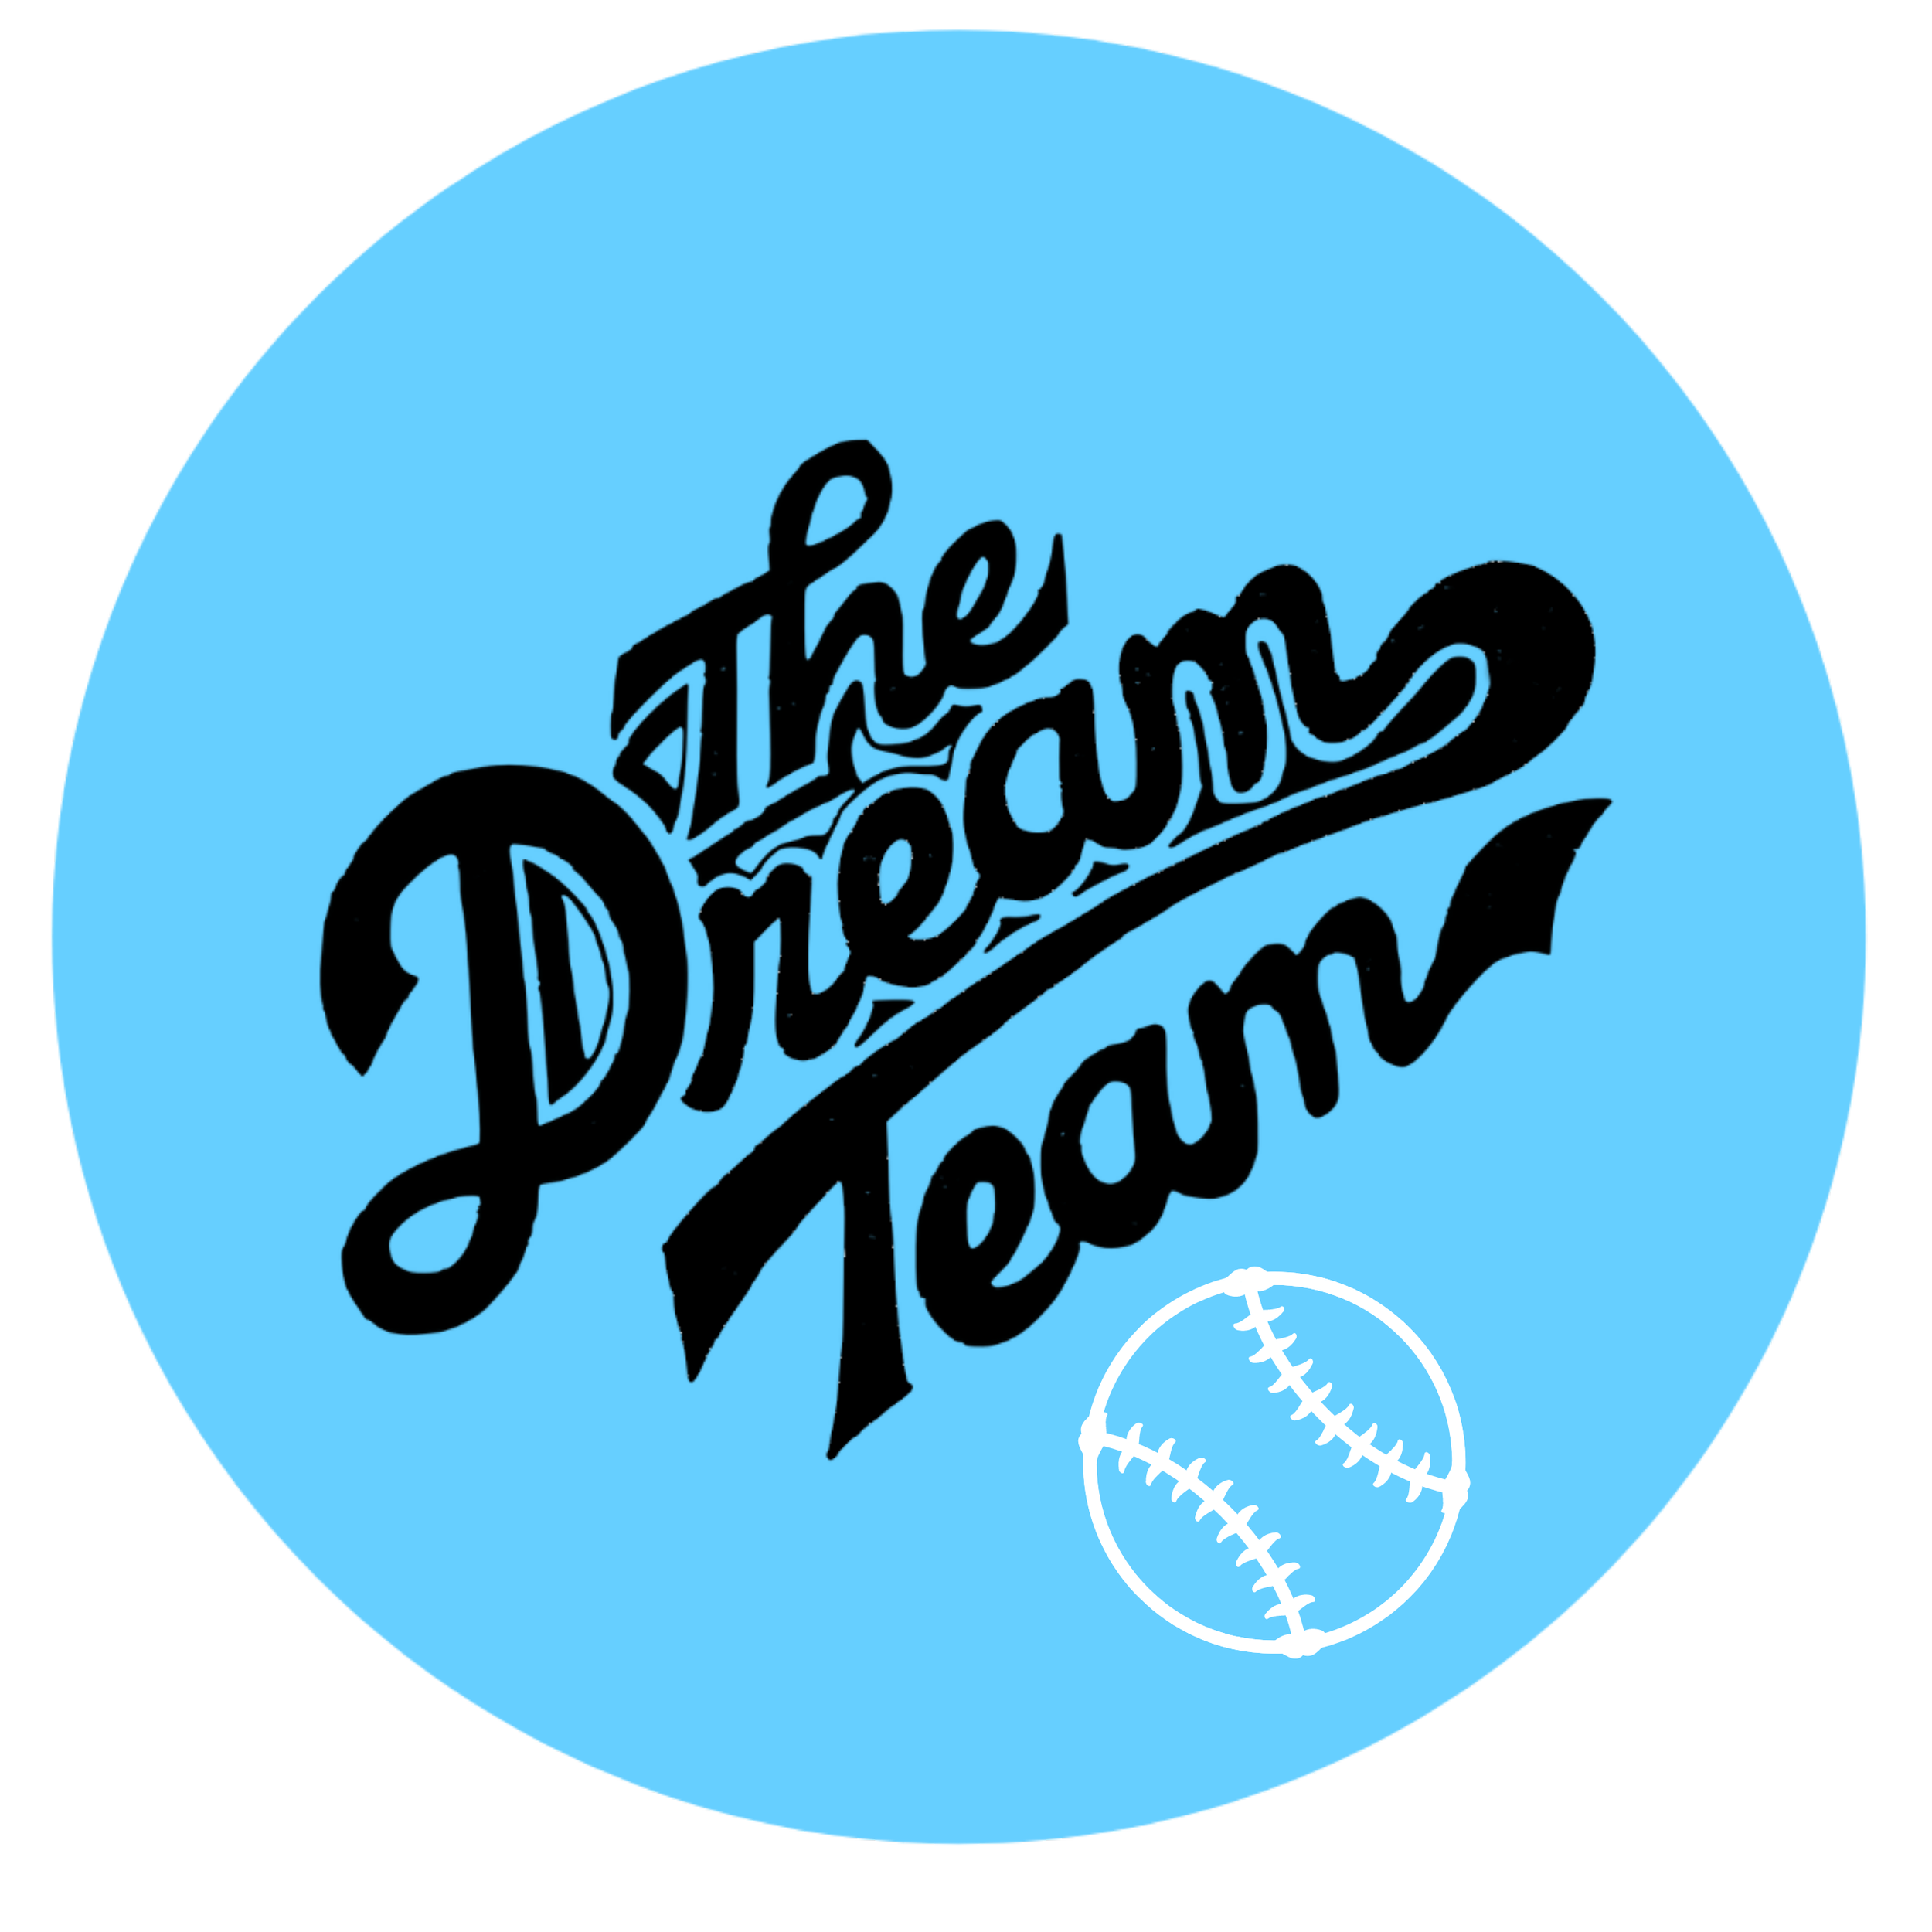 The Dream Team Musical